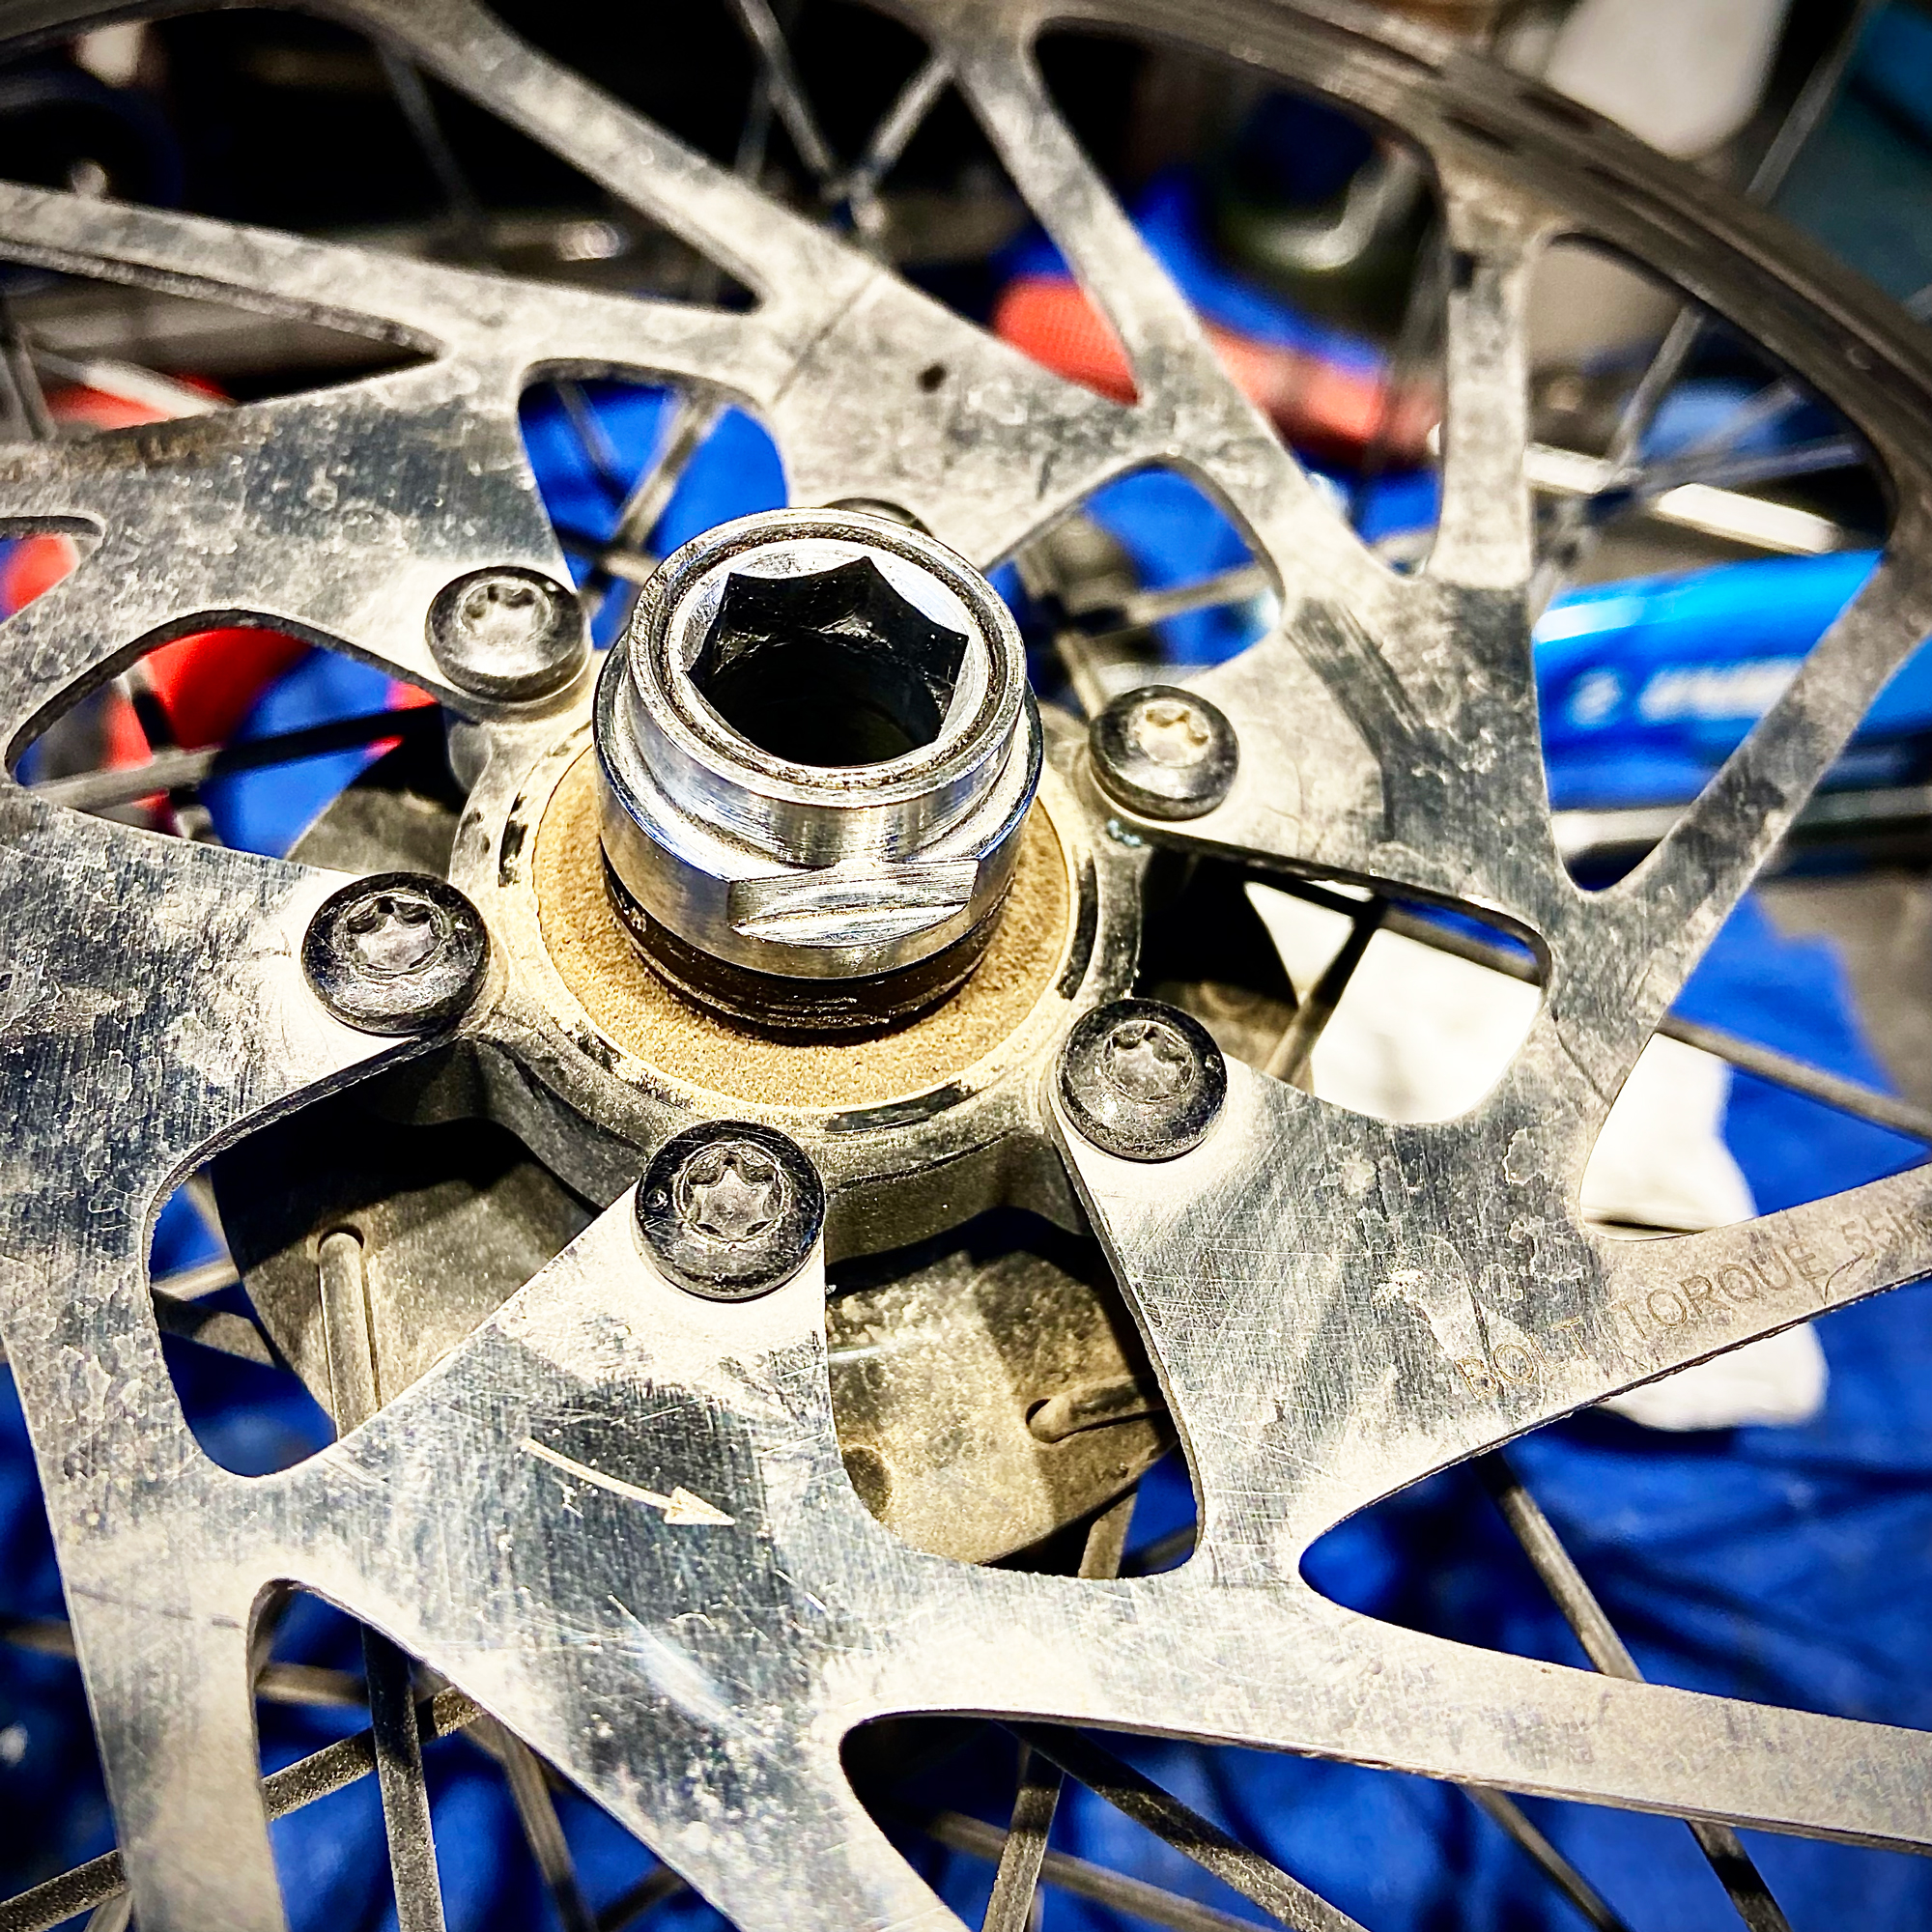 réparation roue vélo